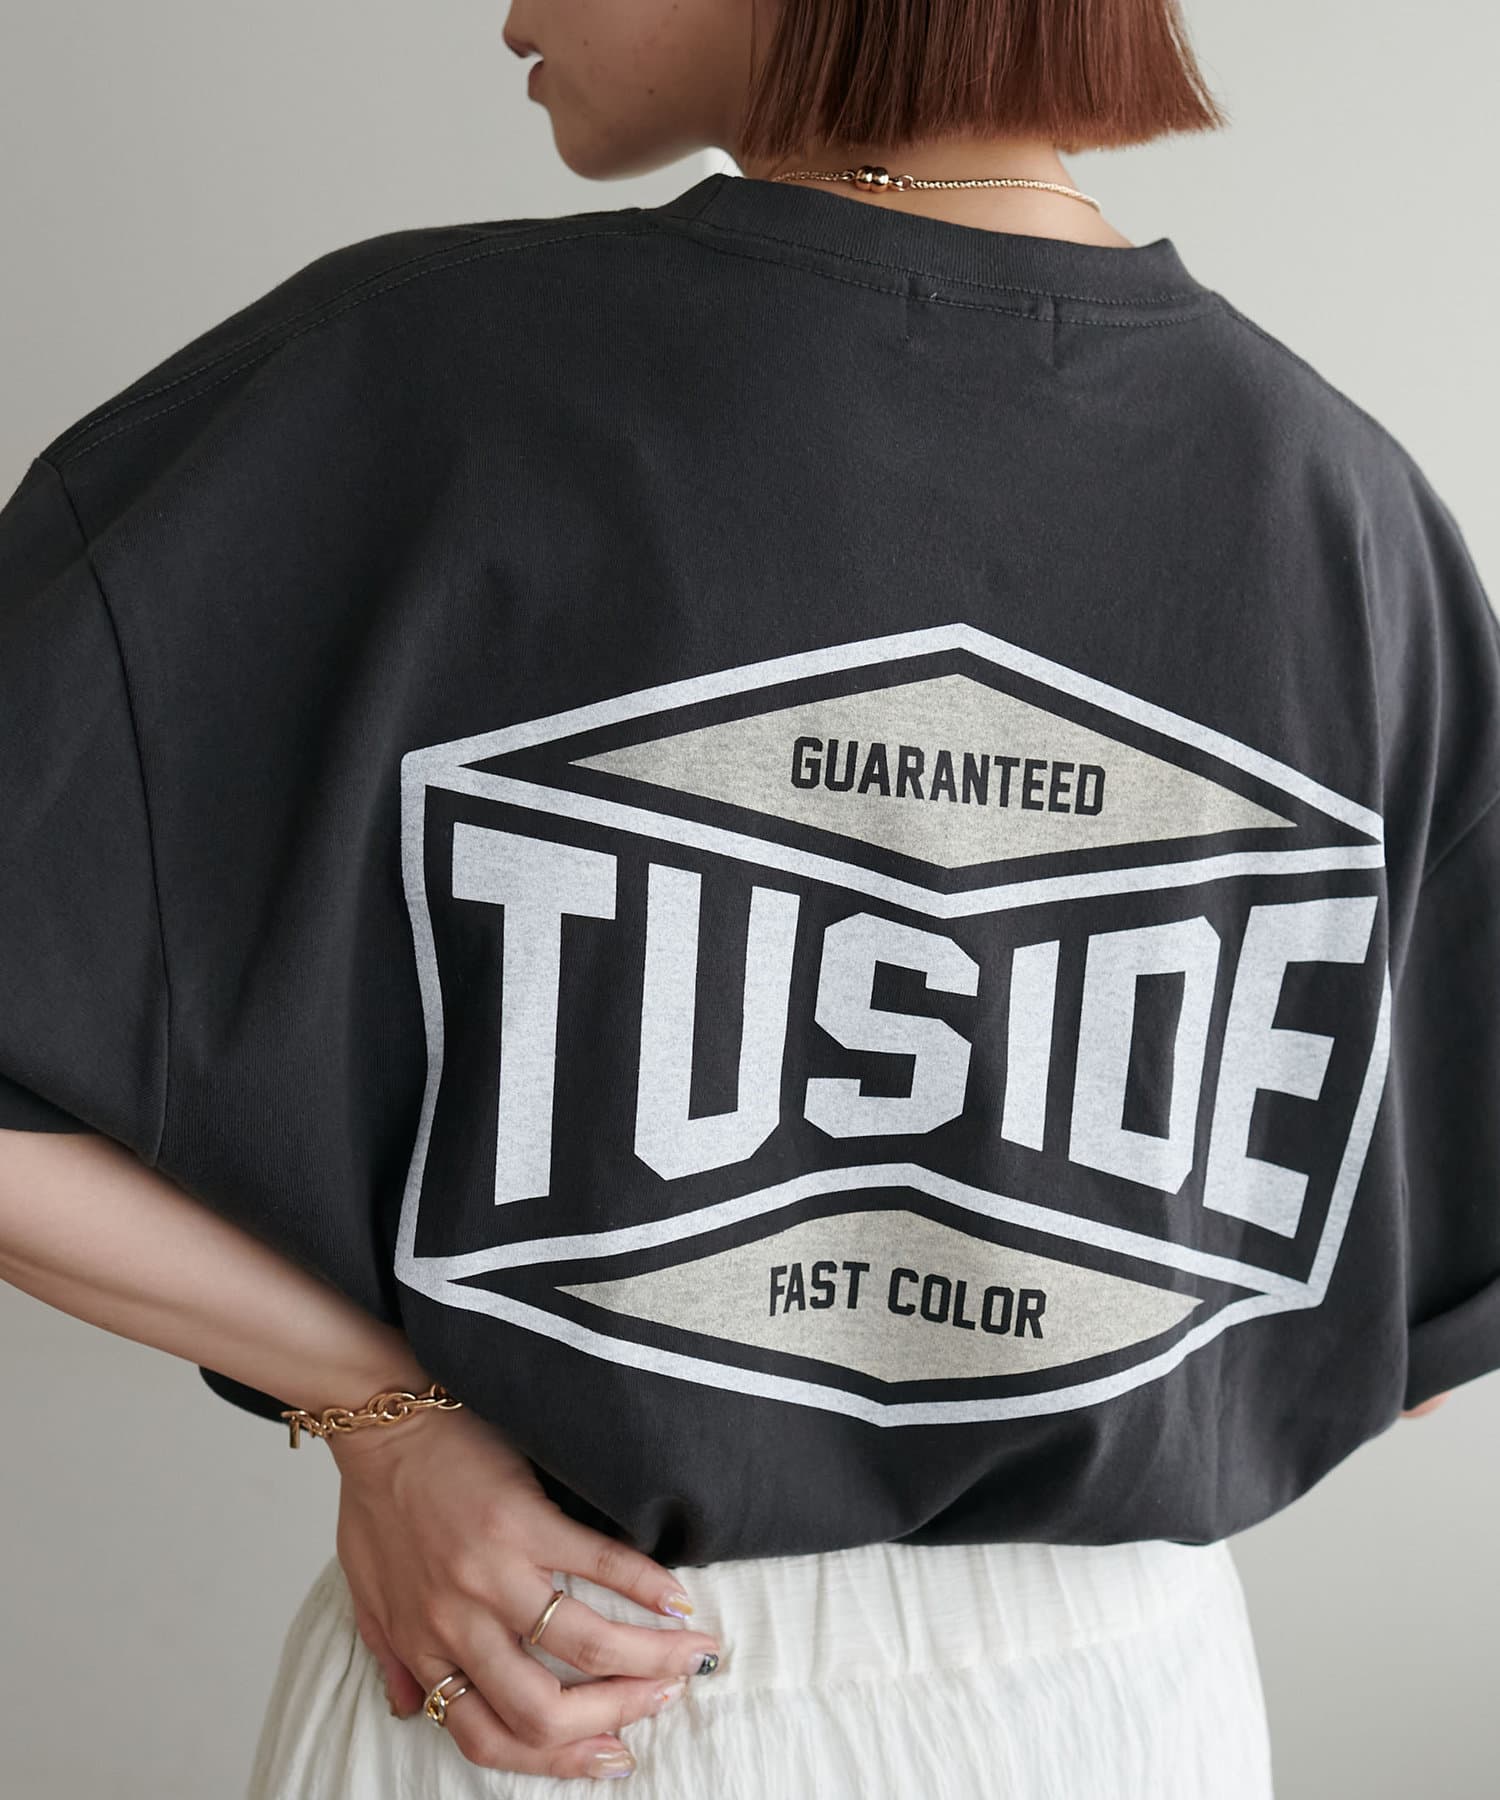 DISCOAT(ディスコート) 【ユニセックス】TUSIDEコーポレートロゴバックプリントTシャツ